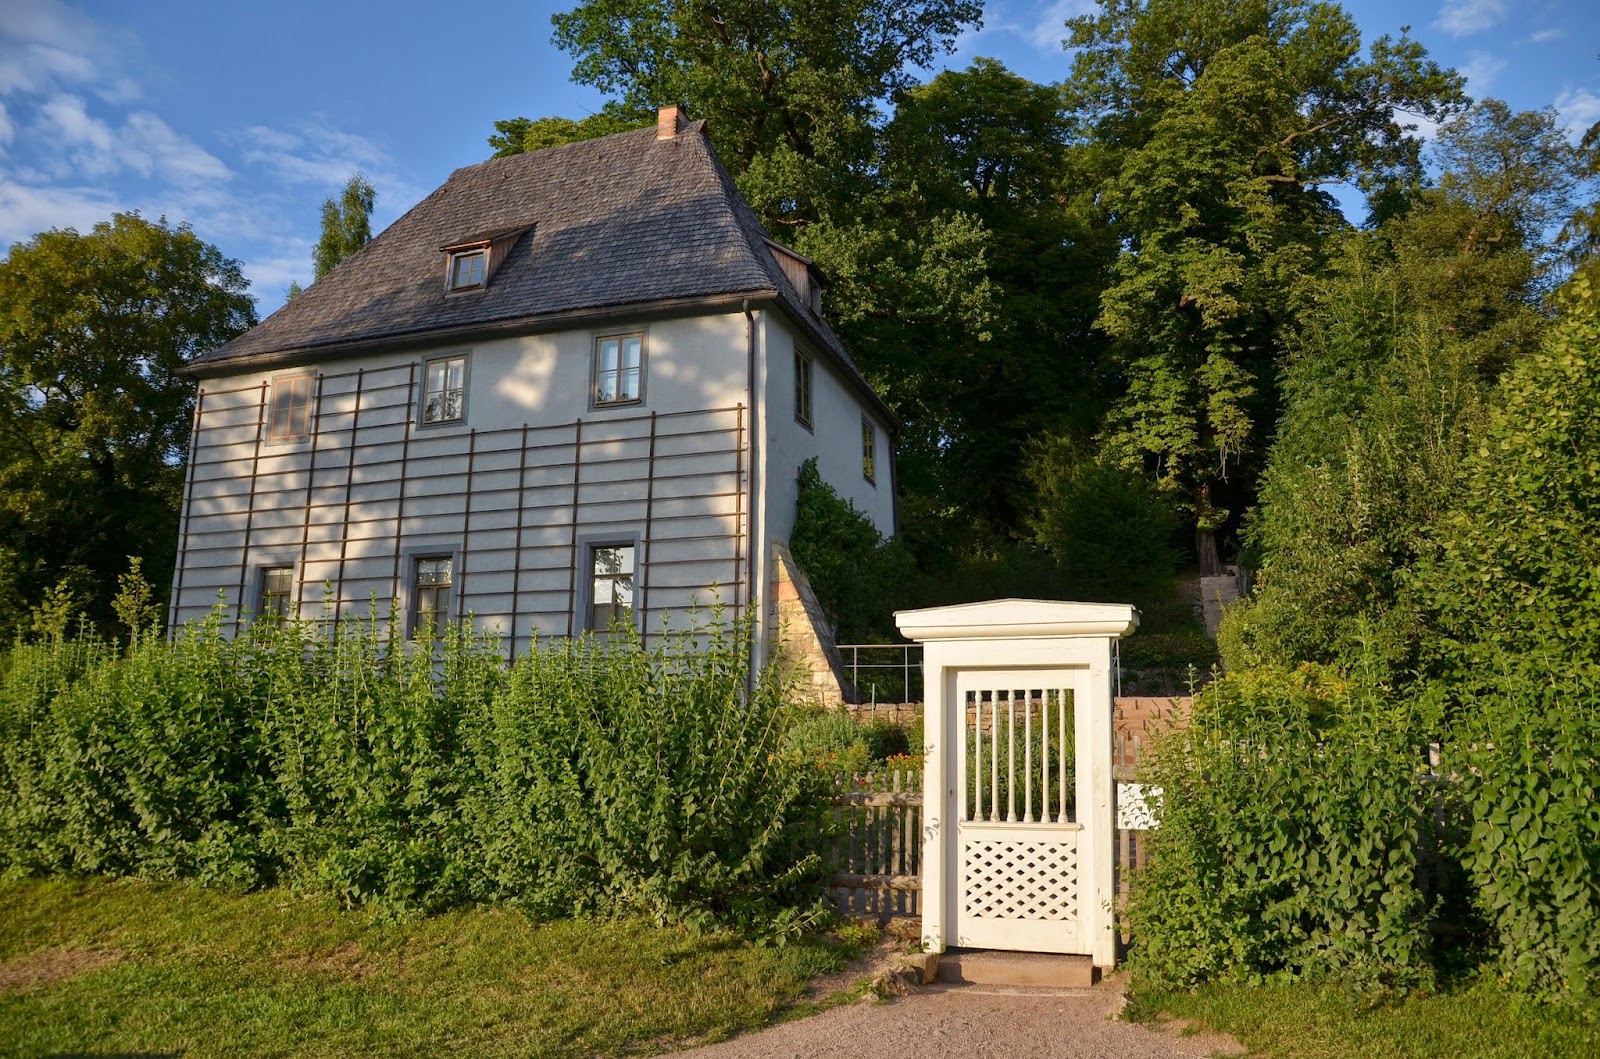 Goethe's Garden house